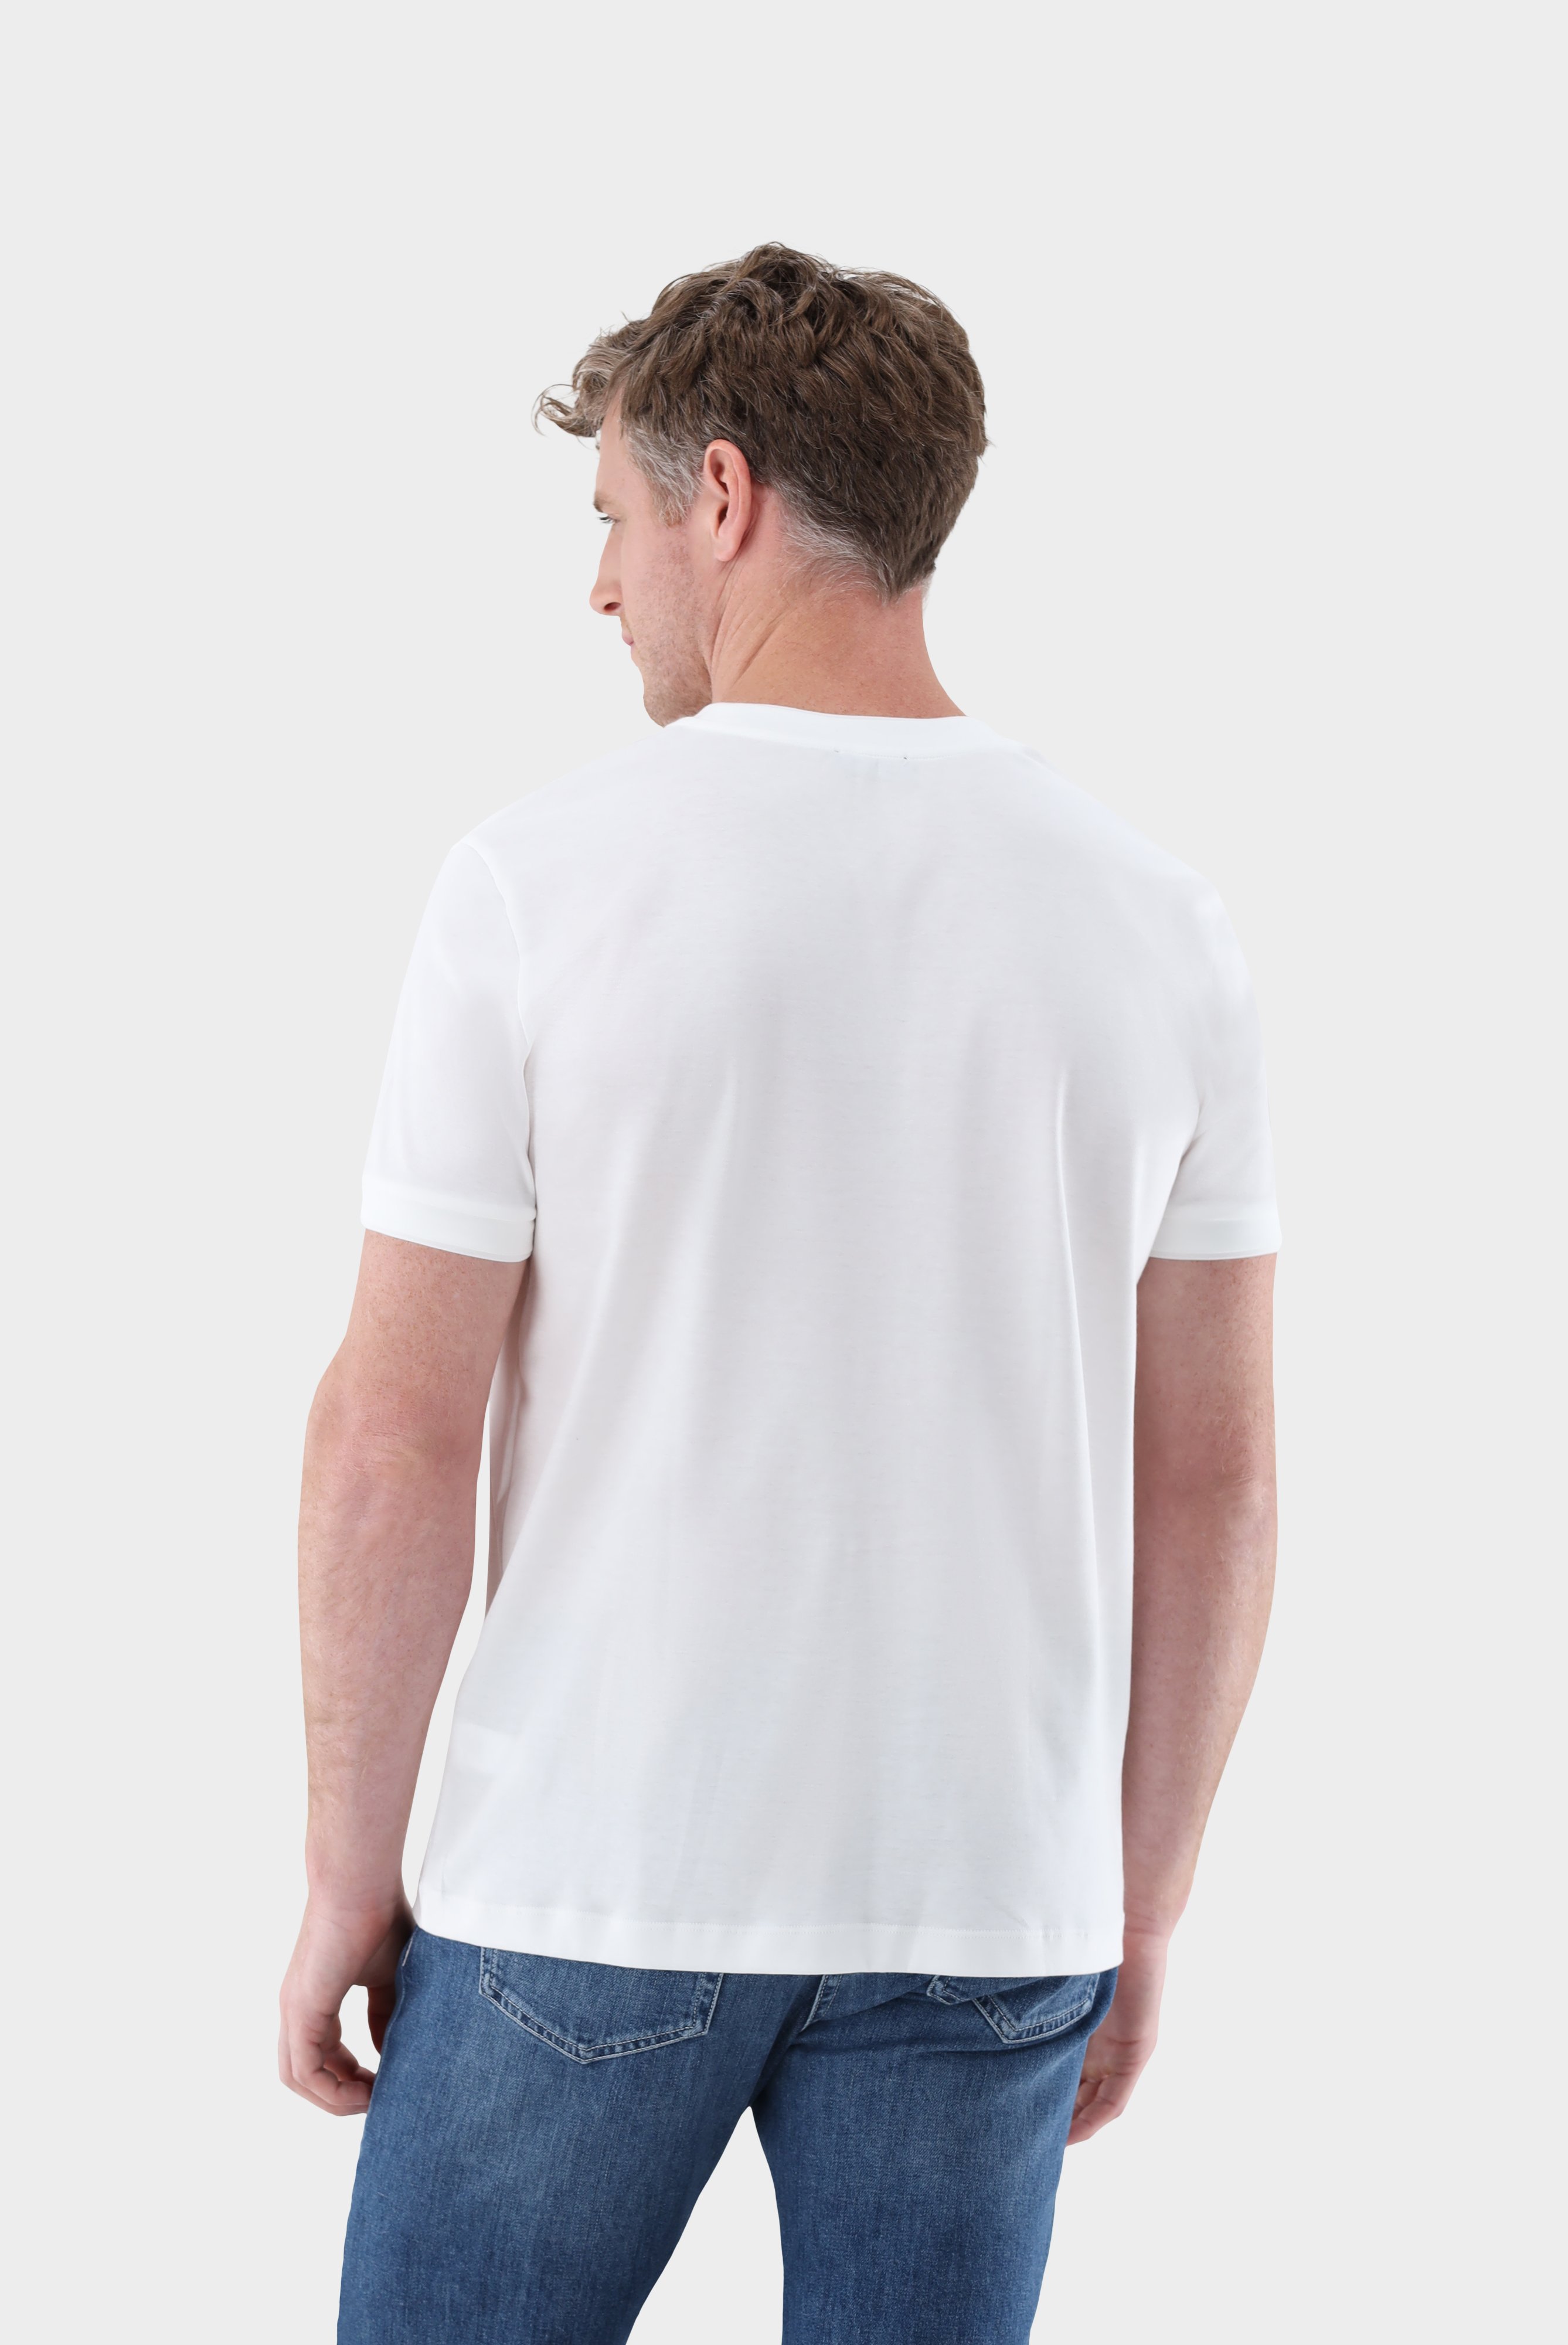 T-Shirts+T-Shirt mit Paspel Details+20.1673.U2.180053.000.XS